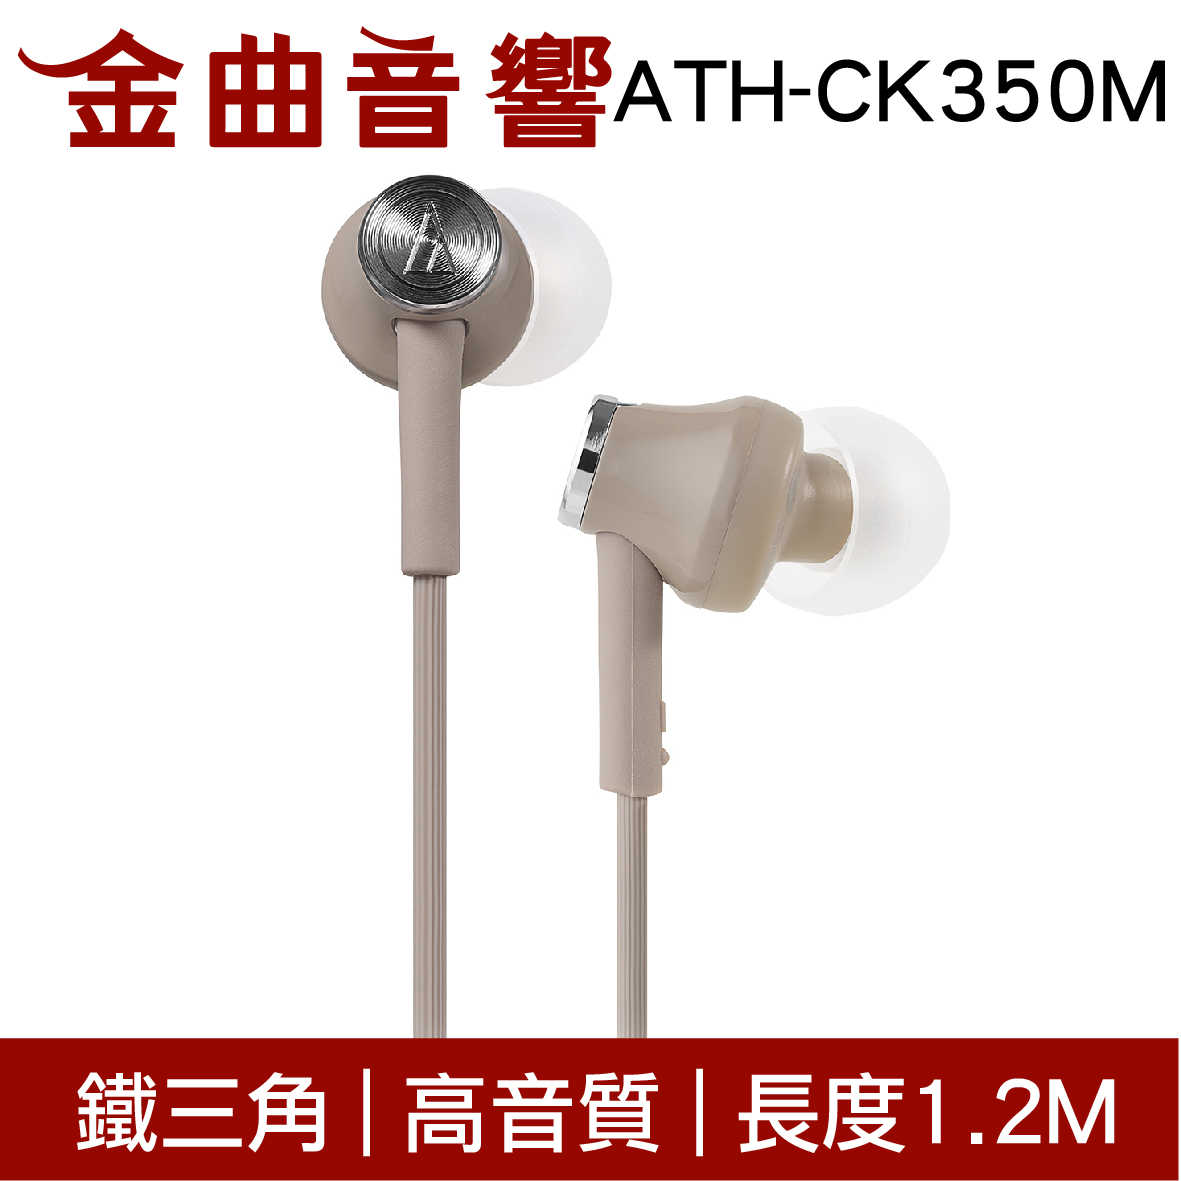 鐵三角 ATH-CK350M 黑色 高音質耳道式耳機 | 金曲音響